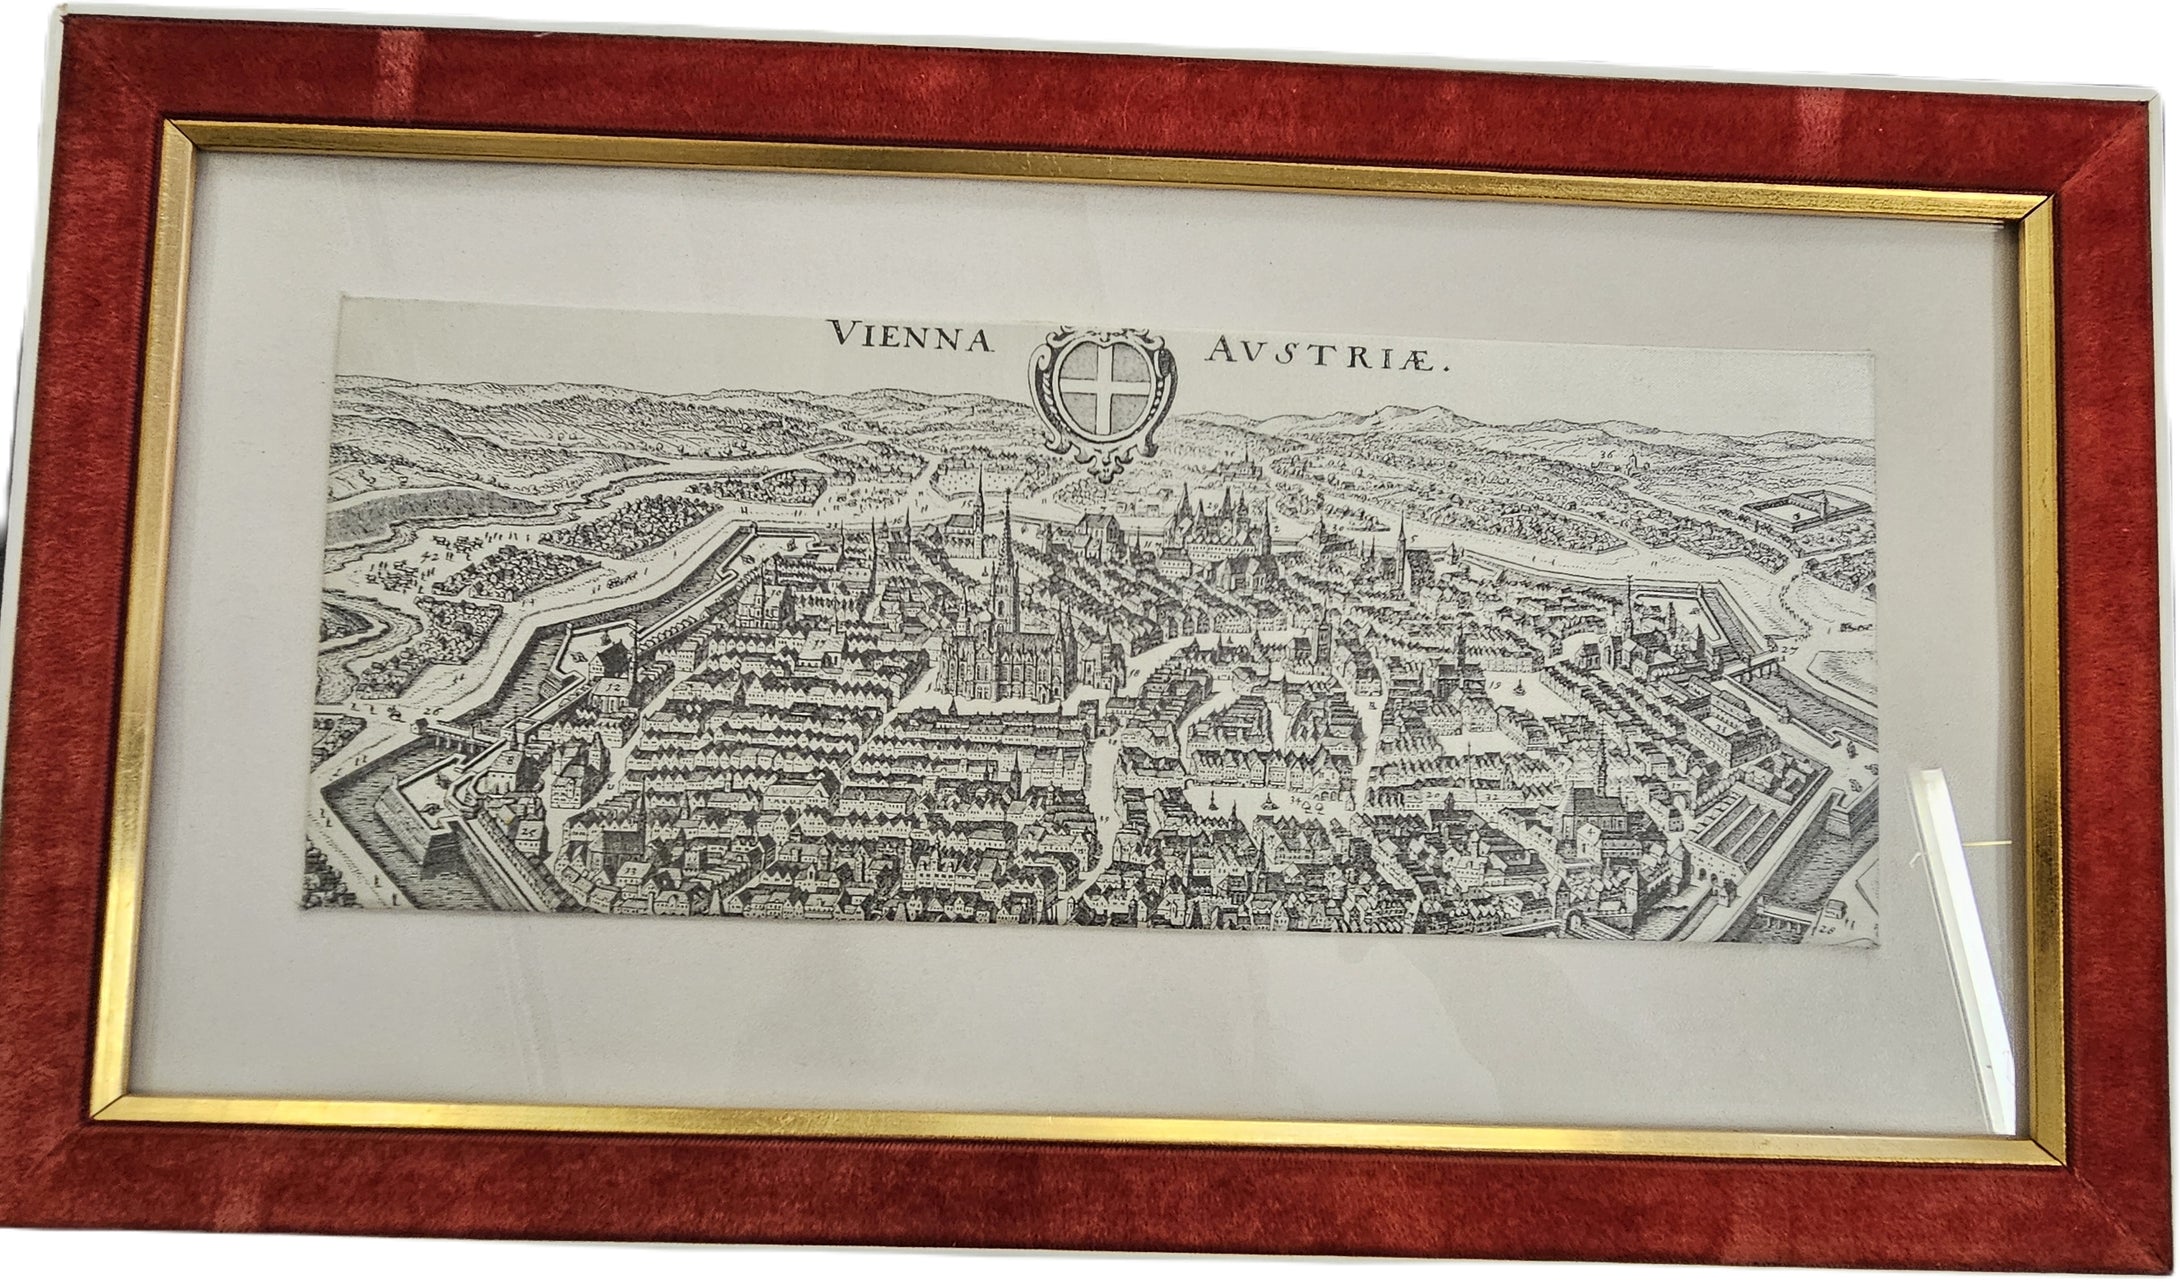 Bild Vienna Austria alte Stadtansicht von Wien